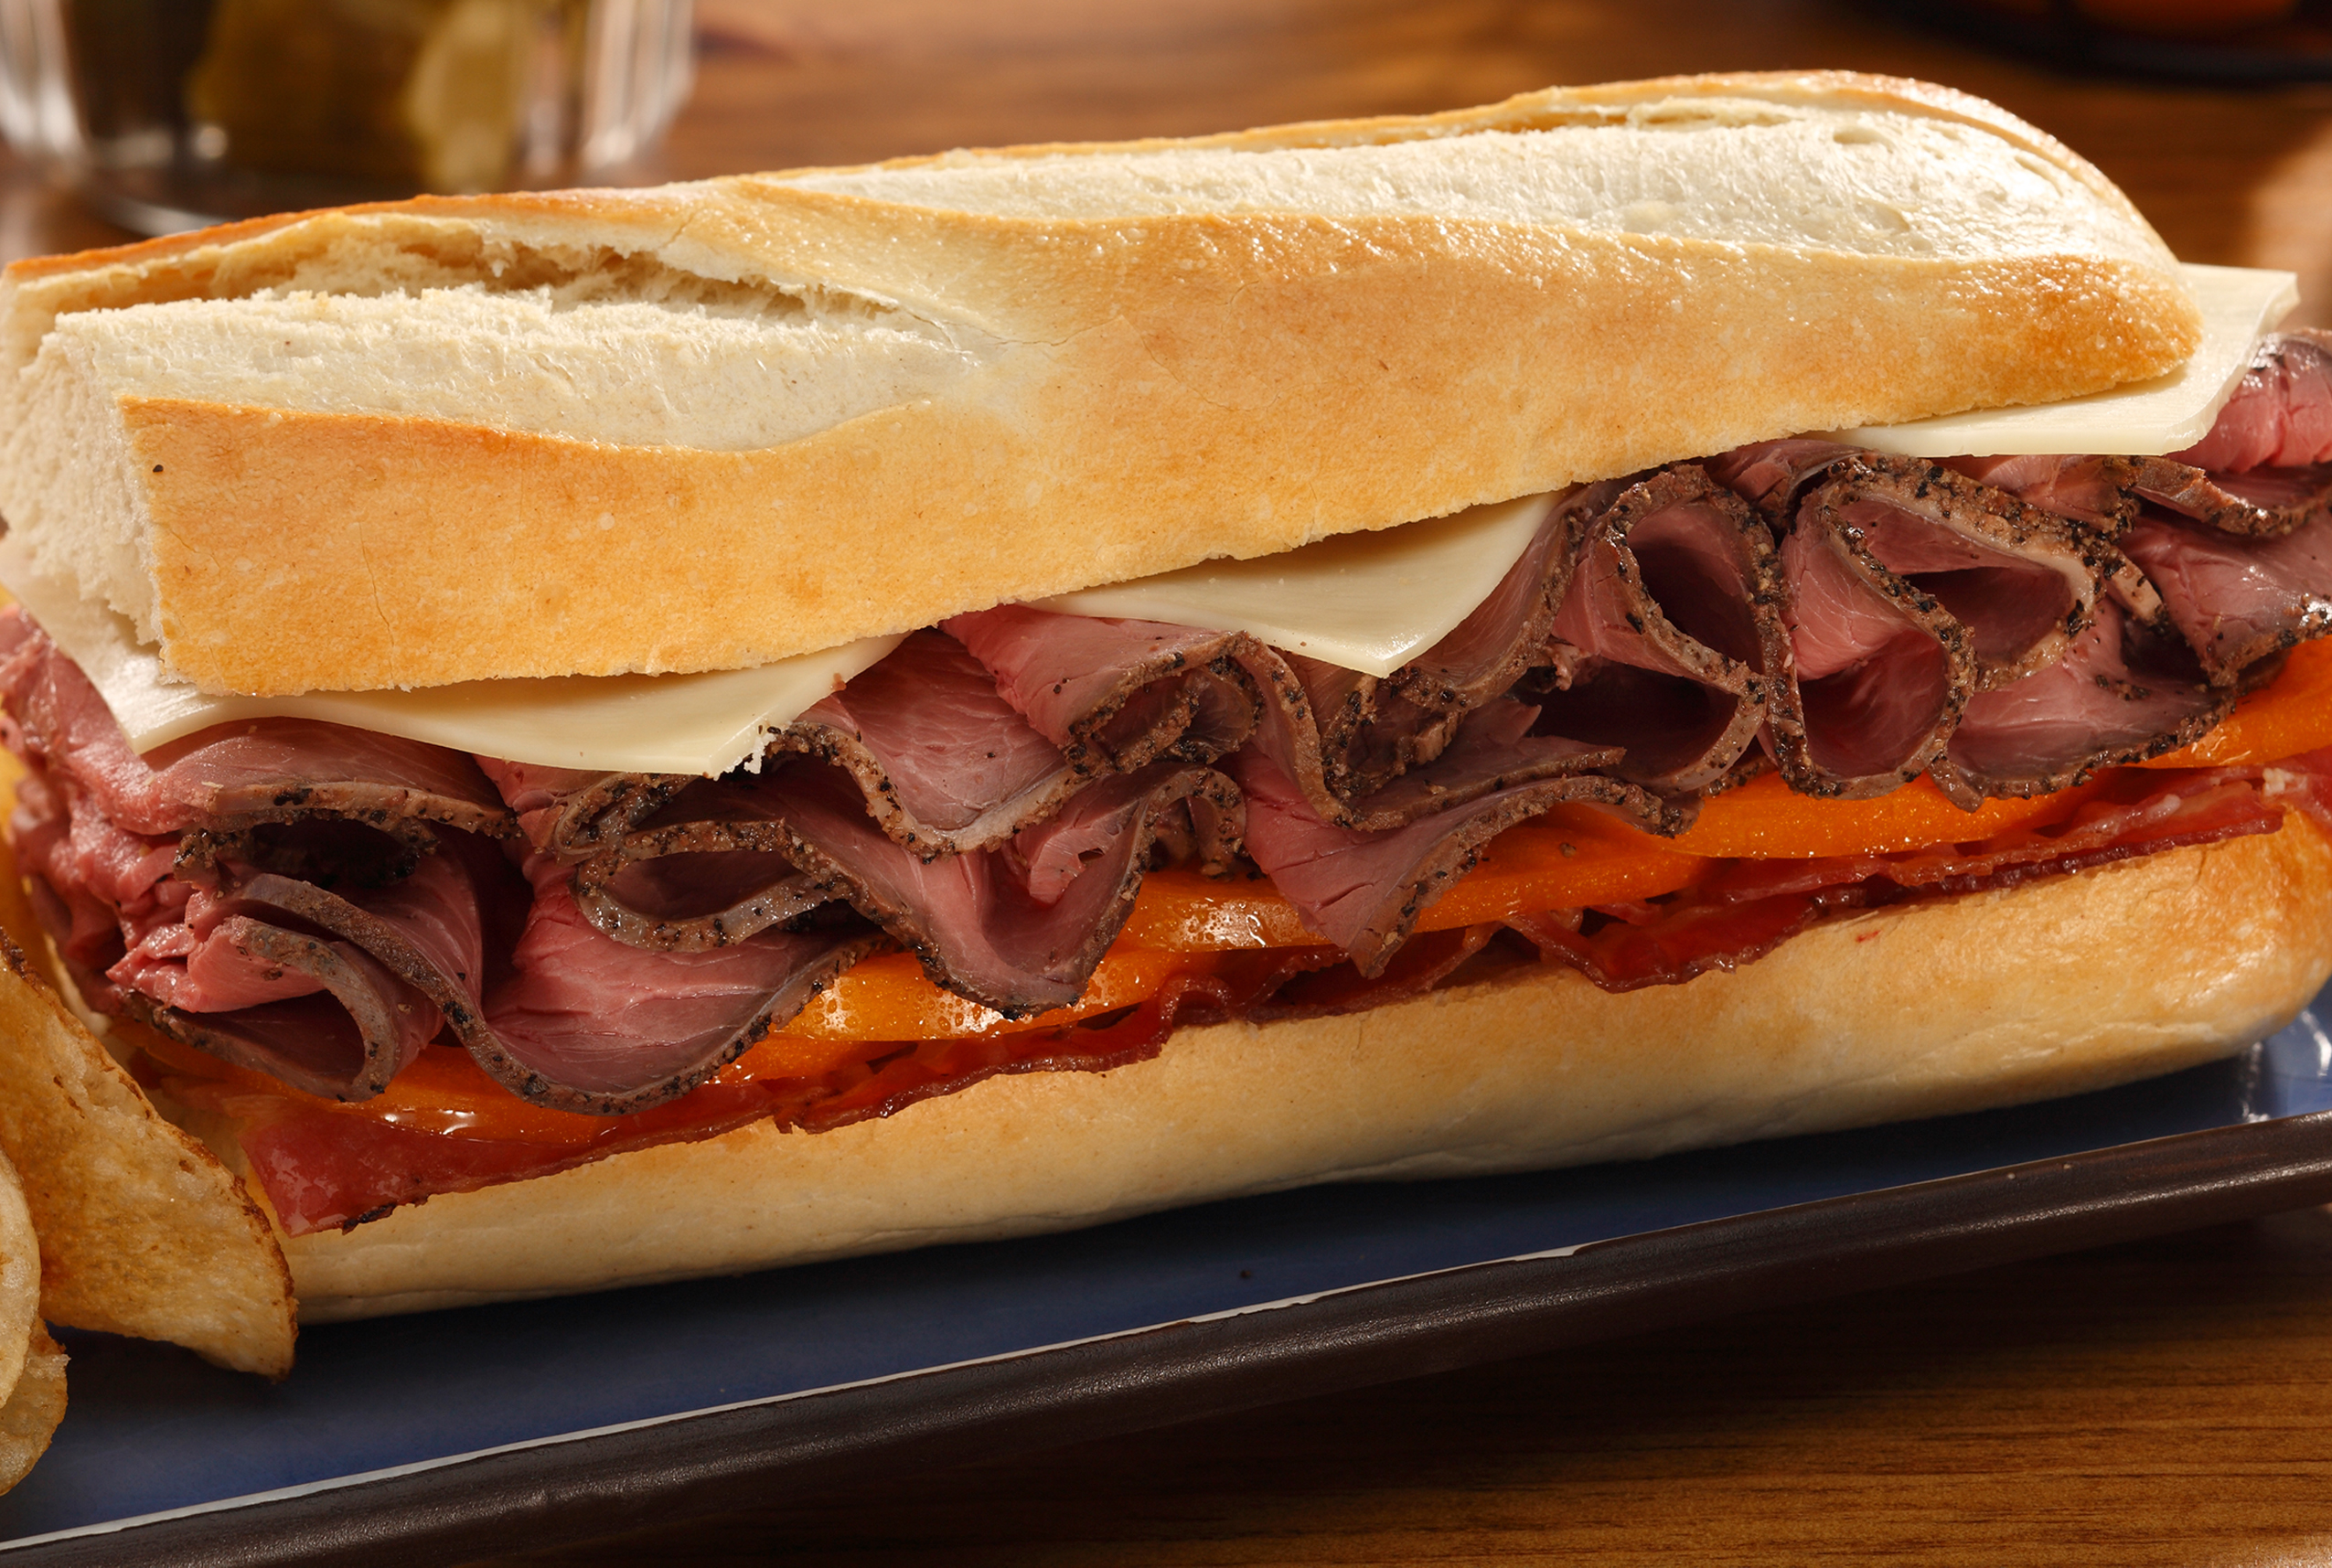 Delicatessen - The Sandwich